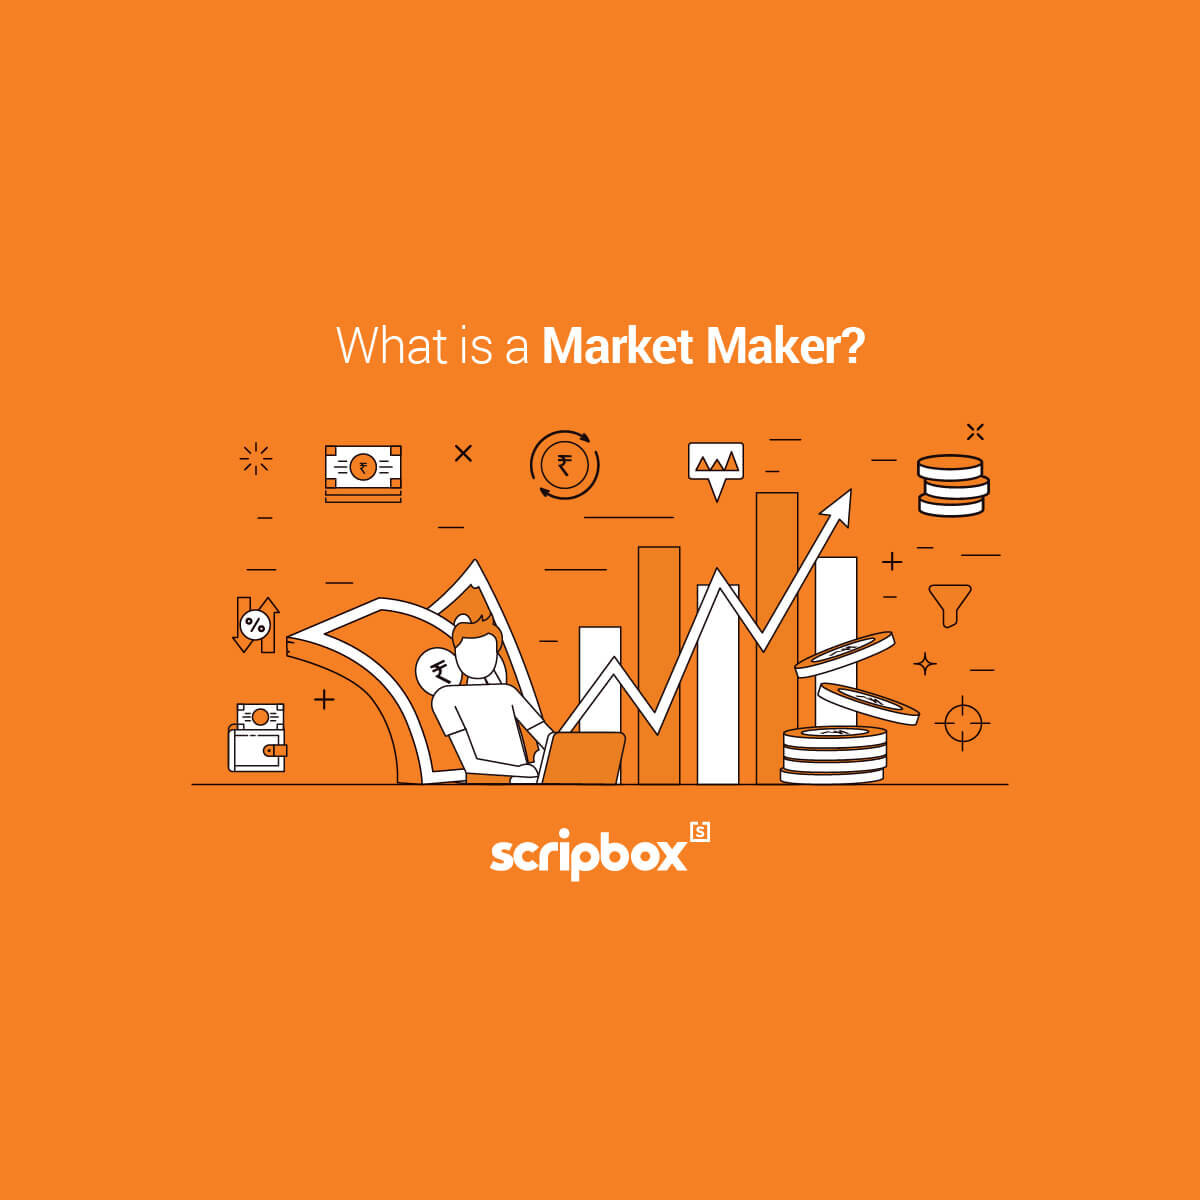 مارکت میکر بروکر فارکس چیست + استراتژی Market Maker